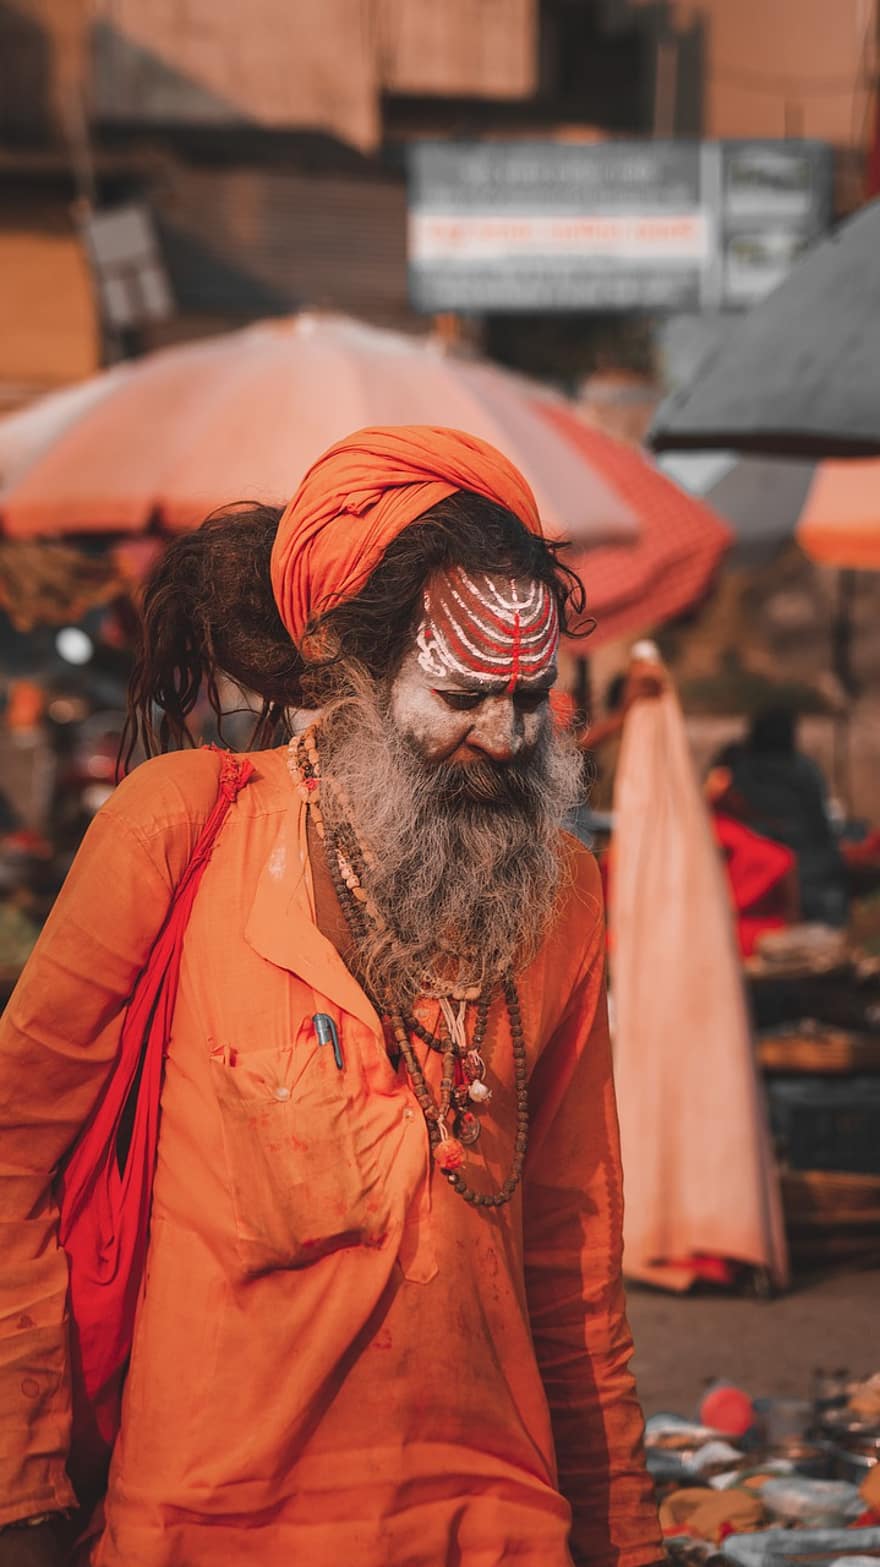 アゴリ、シャイバサドゥー、男達、文化、先住民の文化、一人、ターバン、あごひげ、インド文化、アダルト、伝統的な服